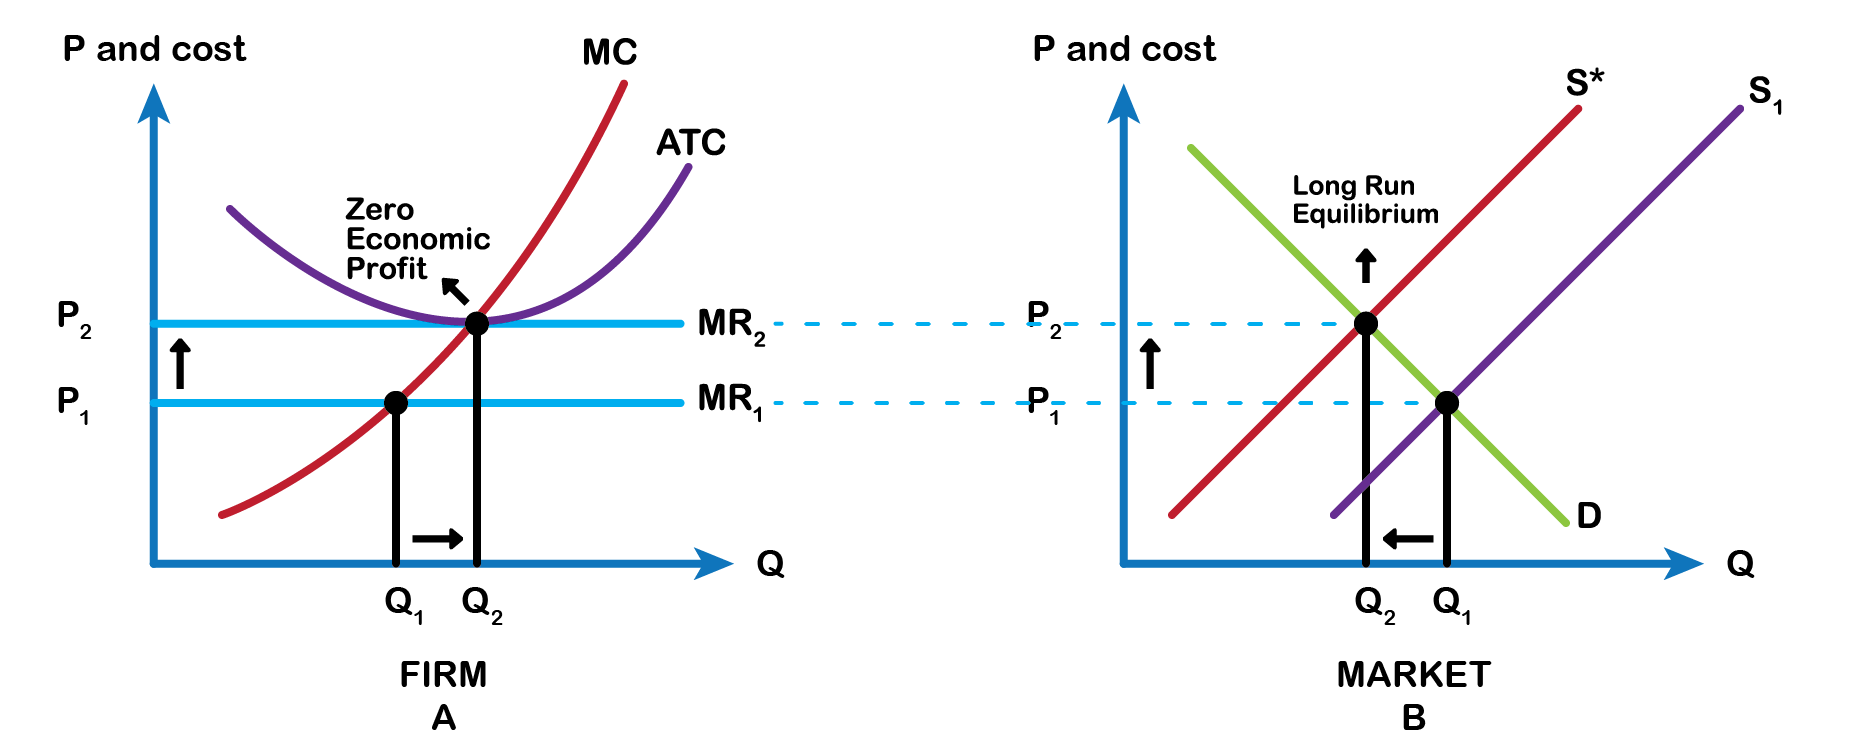 2 graphs. 1 - MR1, MR2, MC, ATC, Q1, Q2 and 0 economic profit point. Distance between MR1 & MR2 (arrow up), Q1 & Q2 (arrow right). 2 S*,S1,D, long run equilibrium. Q1&Q2 distance (arrow left). MR2(p2) & MR1(P1) carried from previous graph